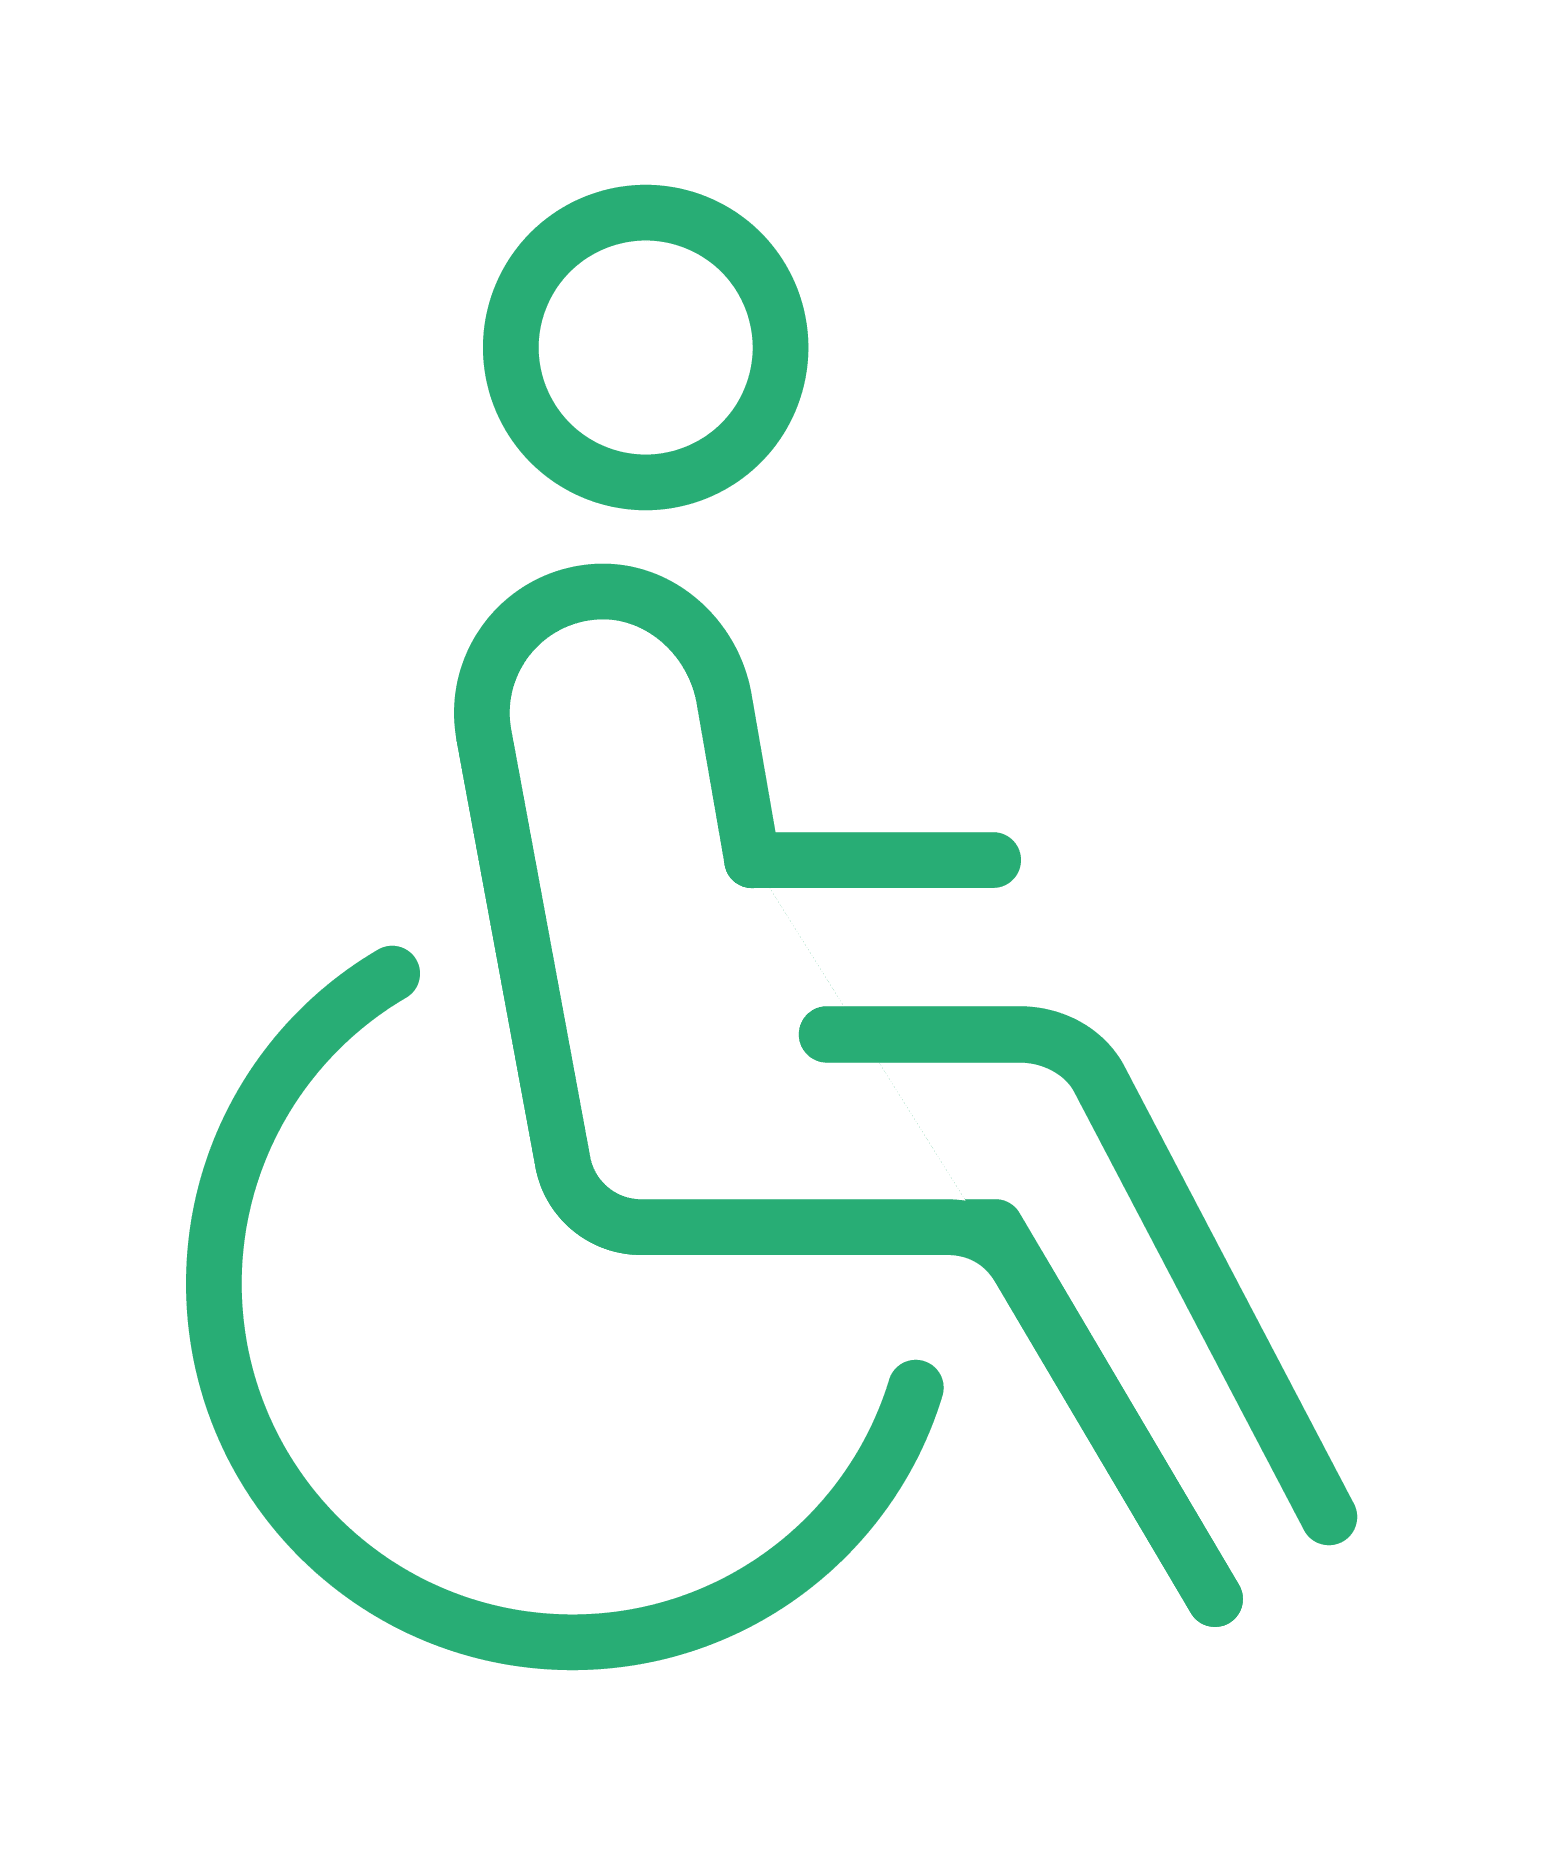 Accessible aux personnes en fauteuil roulant*